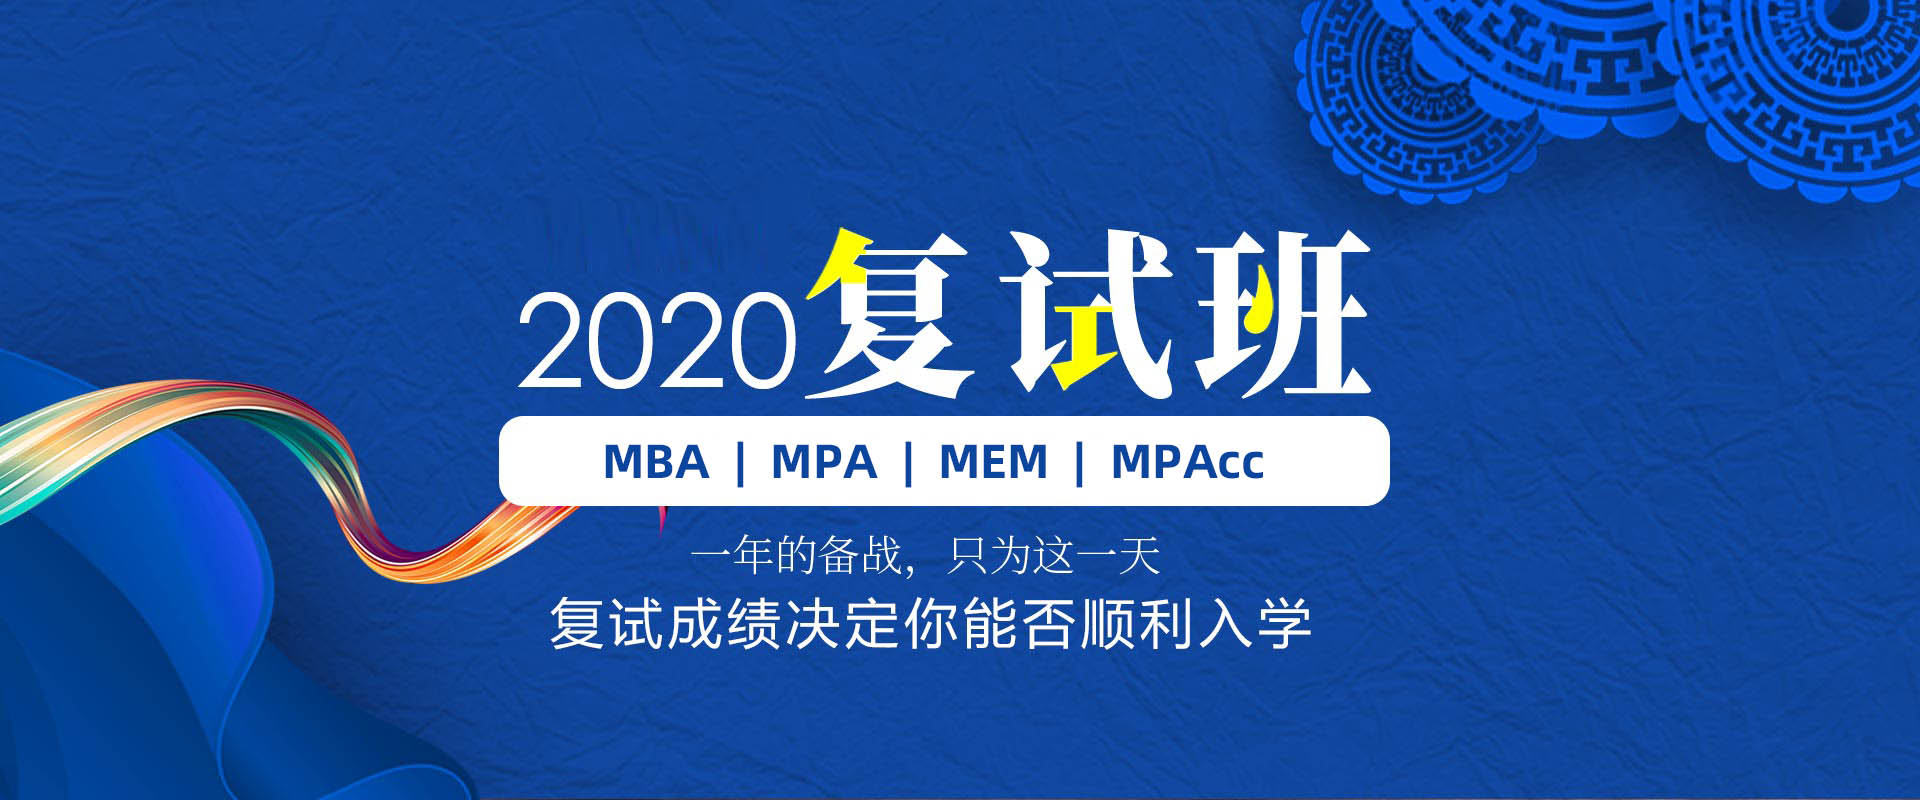 青岛泰祺备考2020年MBA/MPA/MEM/MPAcc 复试班招生简章